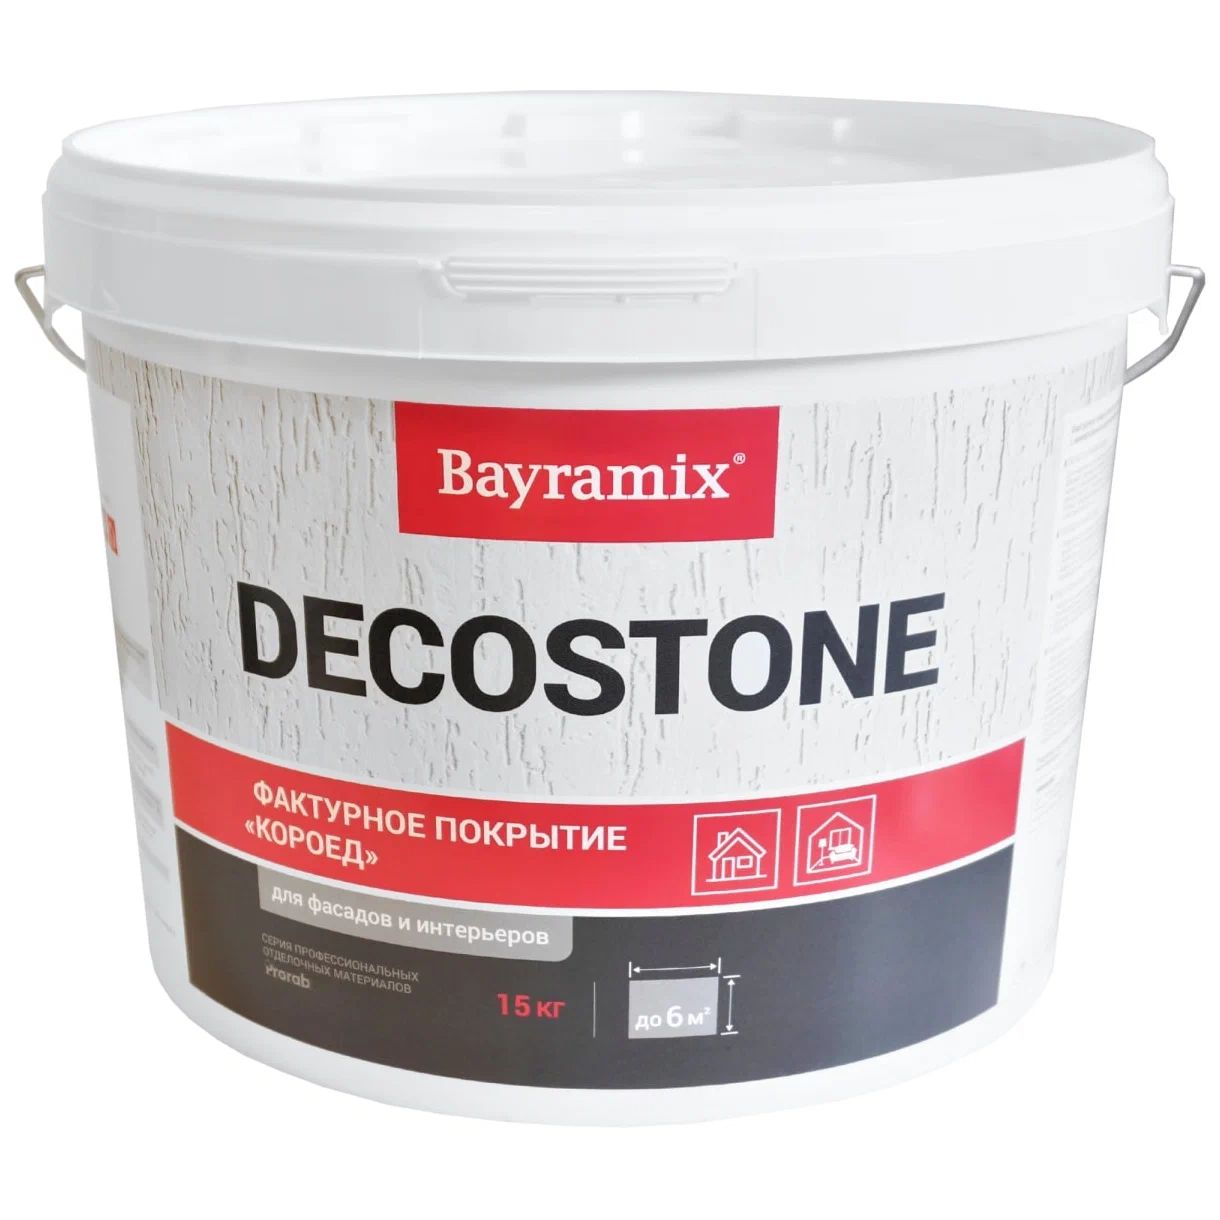 Покрытие Bayramix DECOSTONE 001 M, фактурное, 15 кг